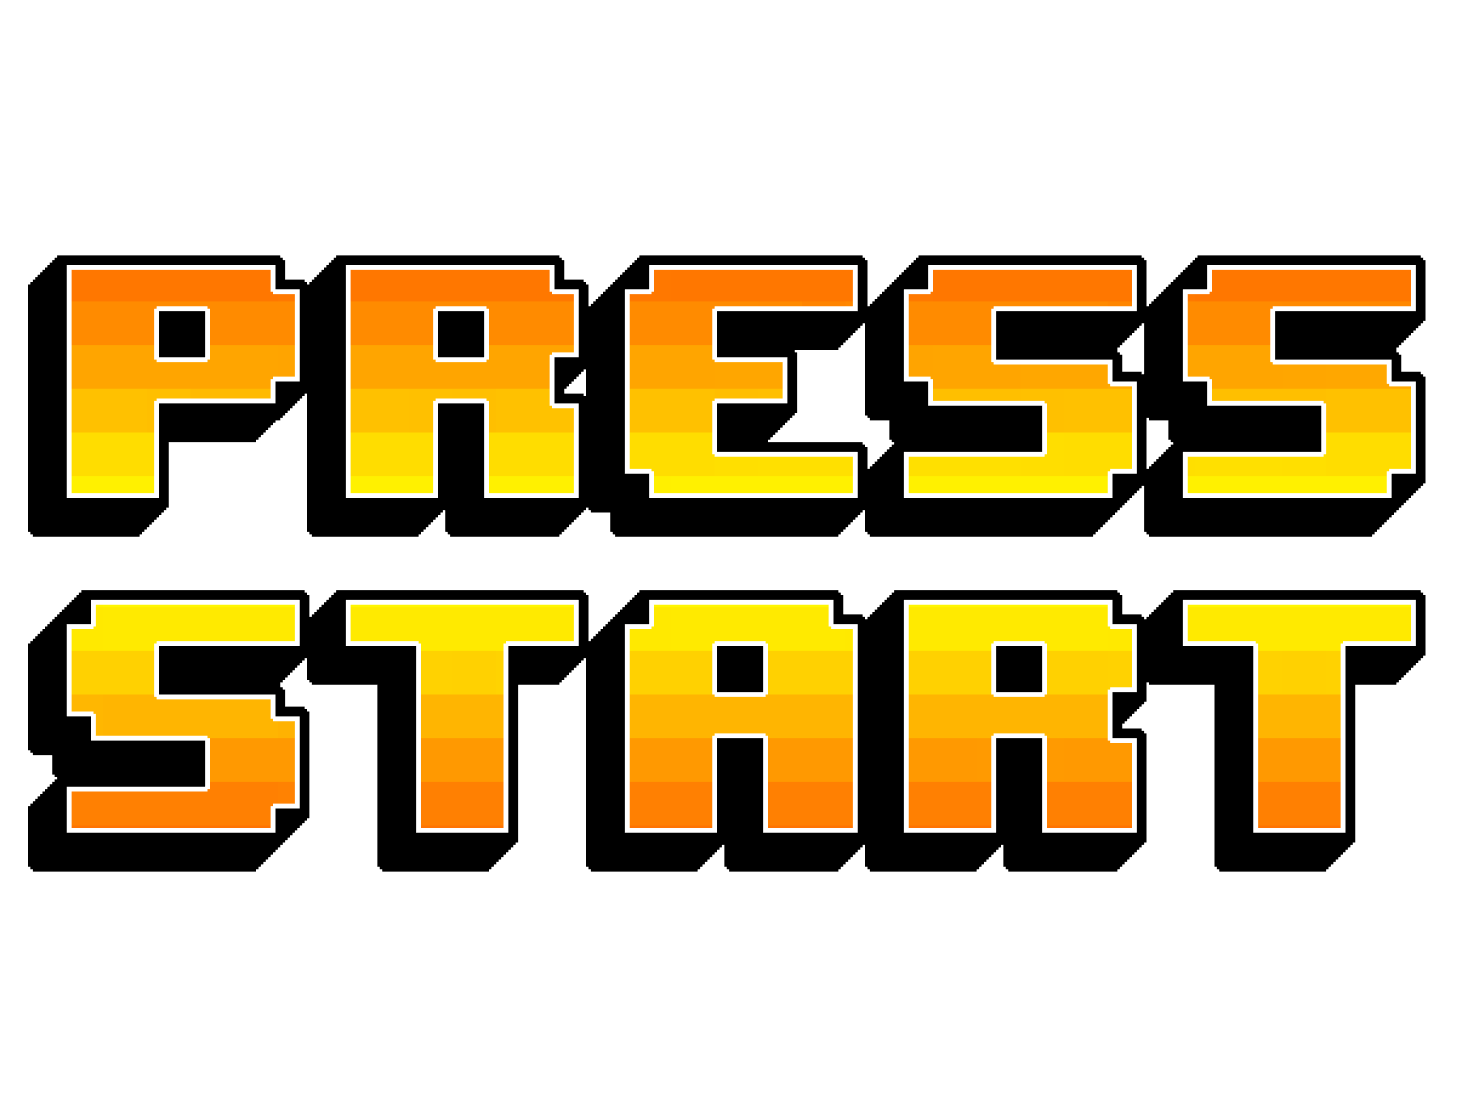 Start game ru. Пиксельные надписи. Пиксельная надпись. Надпись Press start. Пиксельный старт игры.